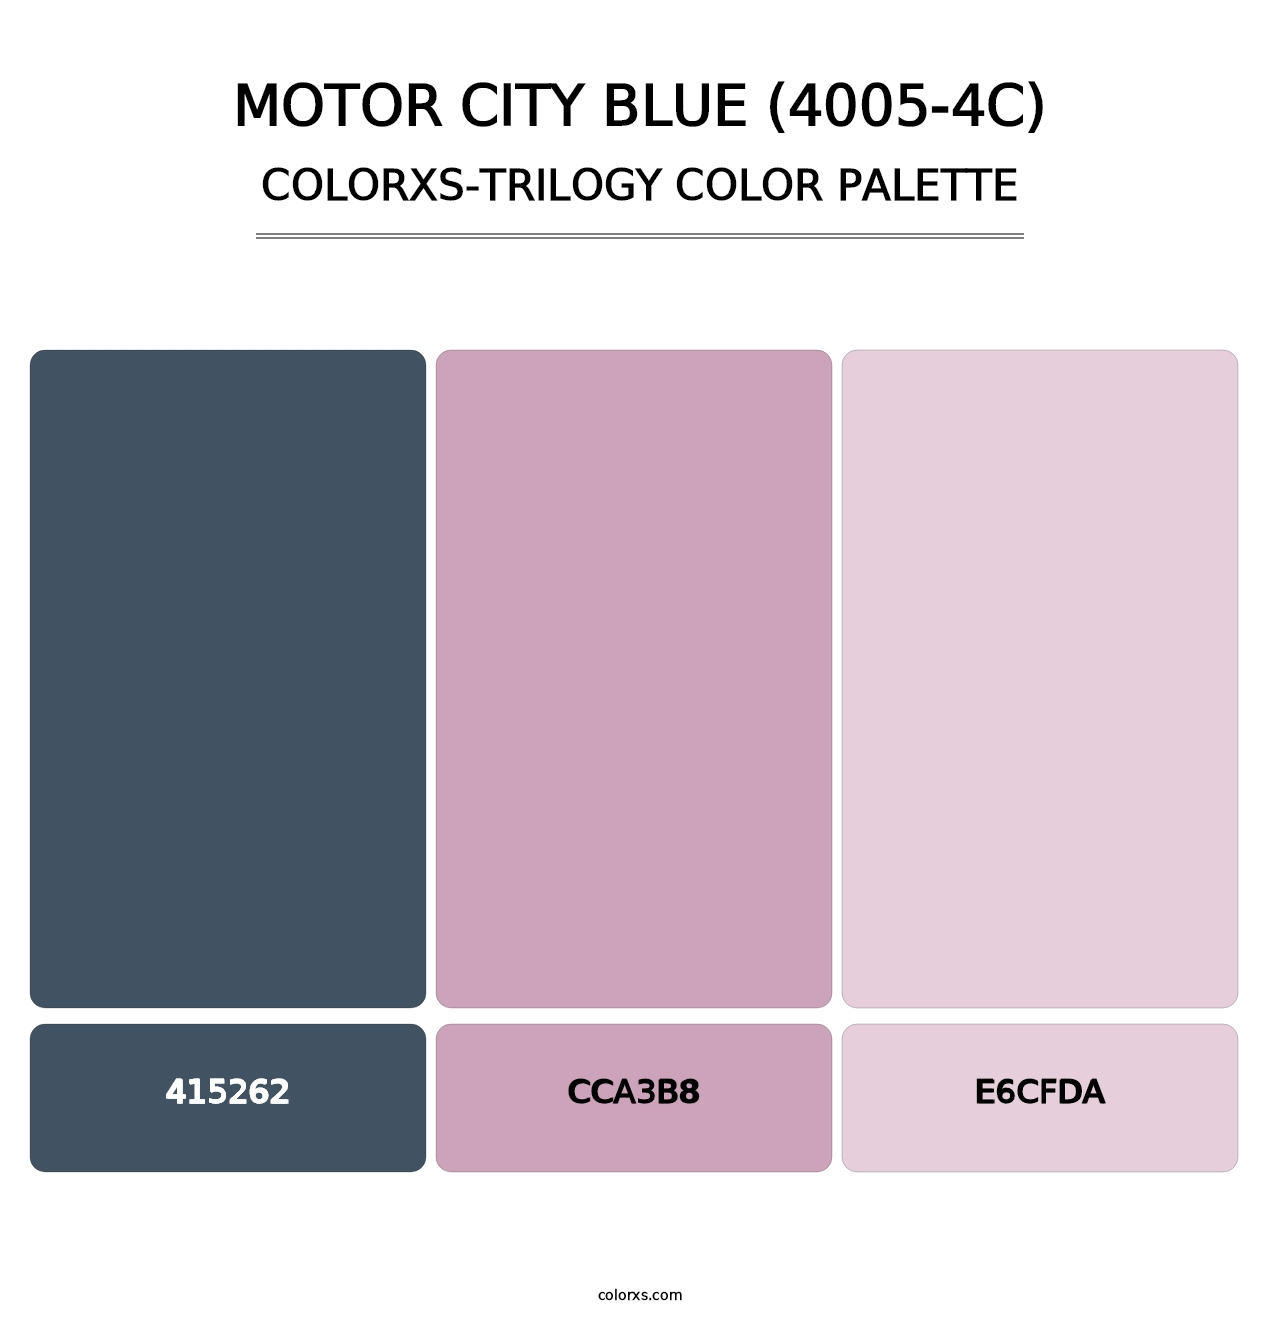 Motor City Blue (4005-4C) - Colorxs Trilogy Palette